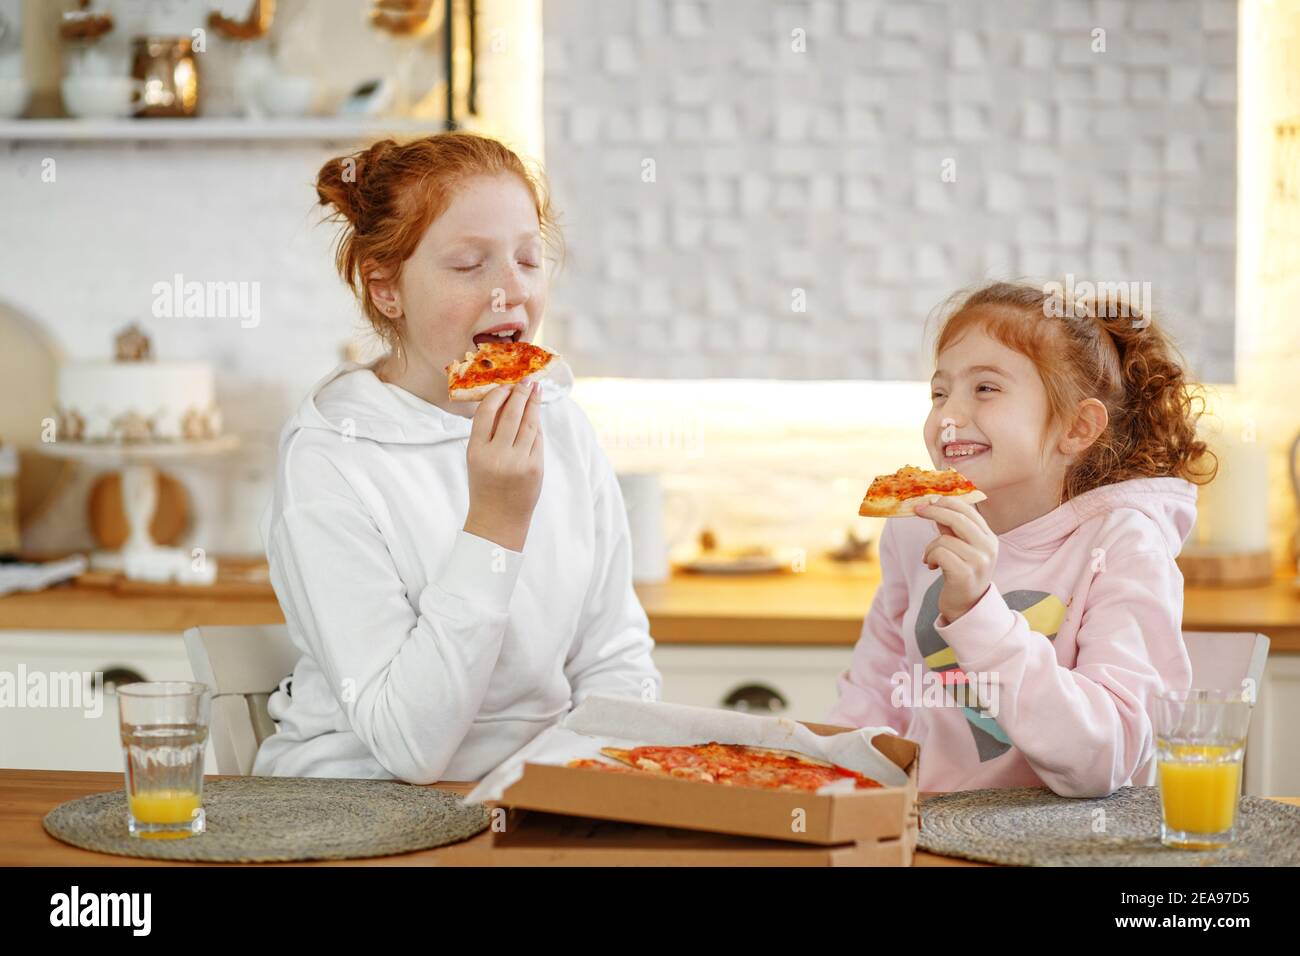 Junge Mädchen mit roten Haaren in der Küche essen Pizza, trinken Saft. Treffen mit Freundinnen, zwei Schwestern. Stockfoto